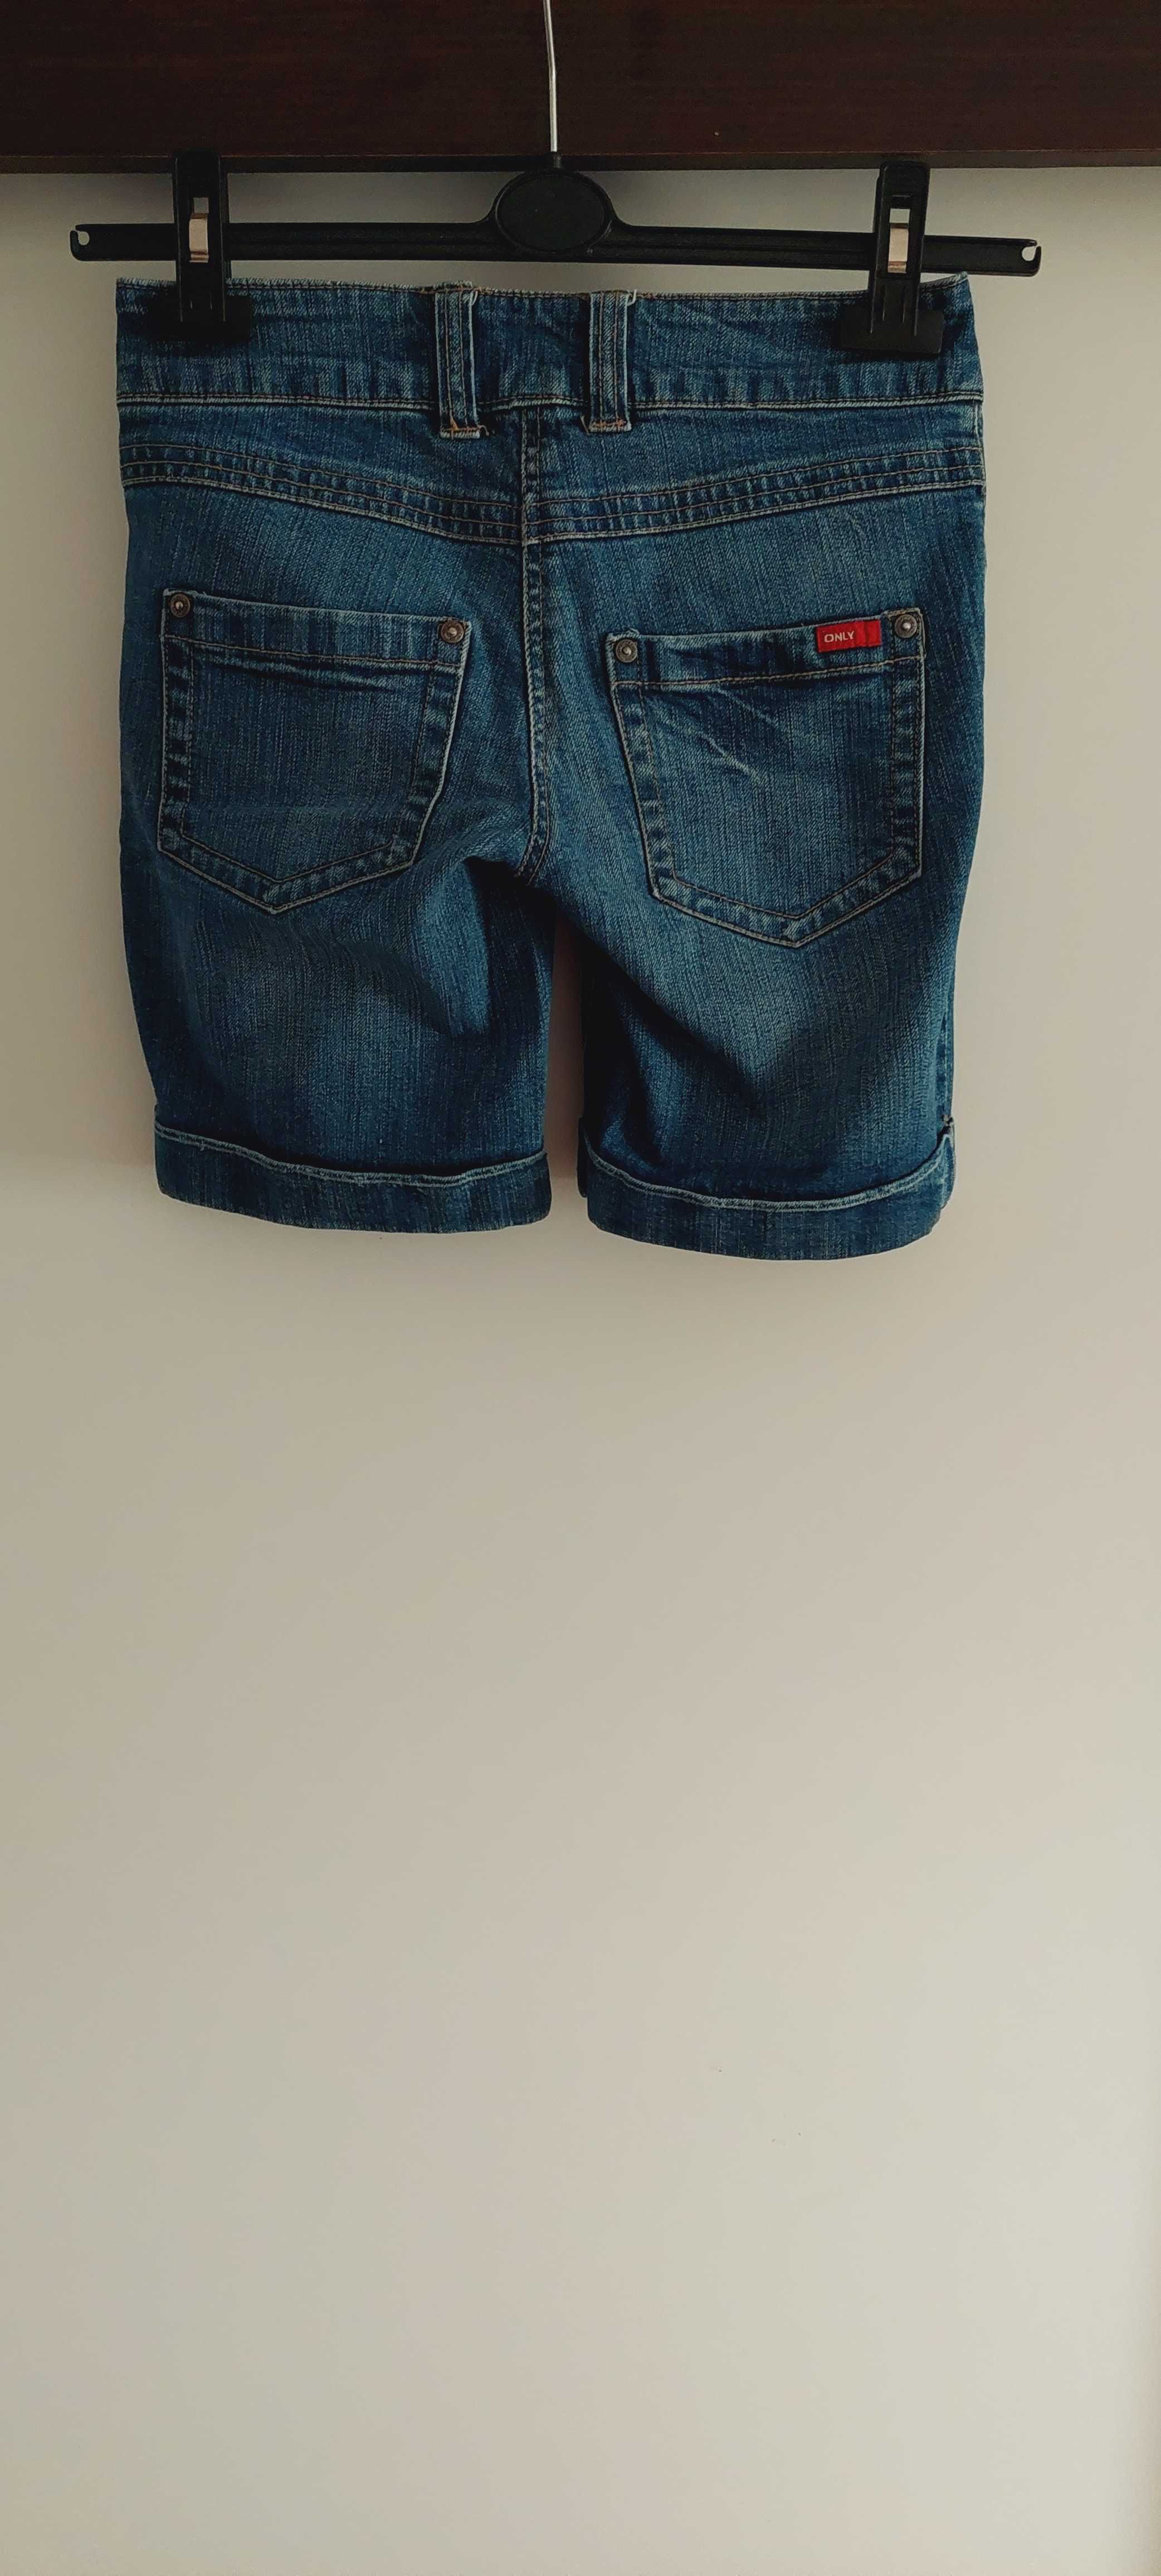 Krótkie spodenki jeansowe damskie, roz 32